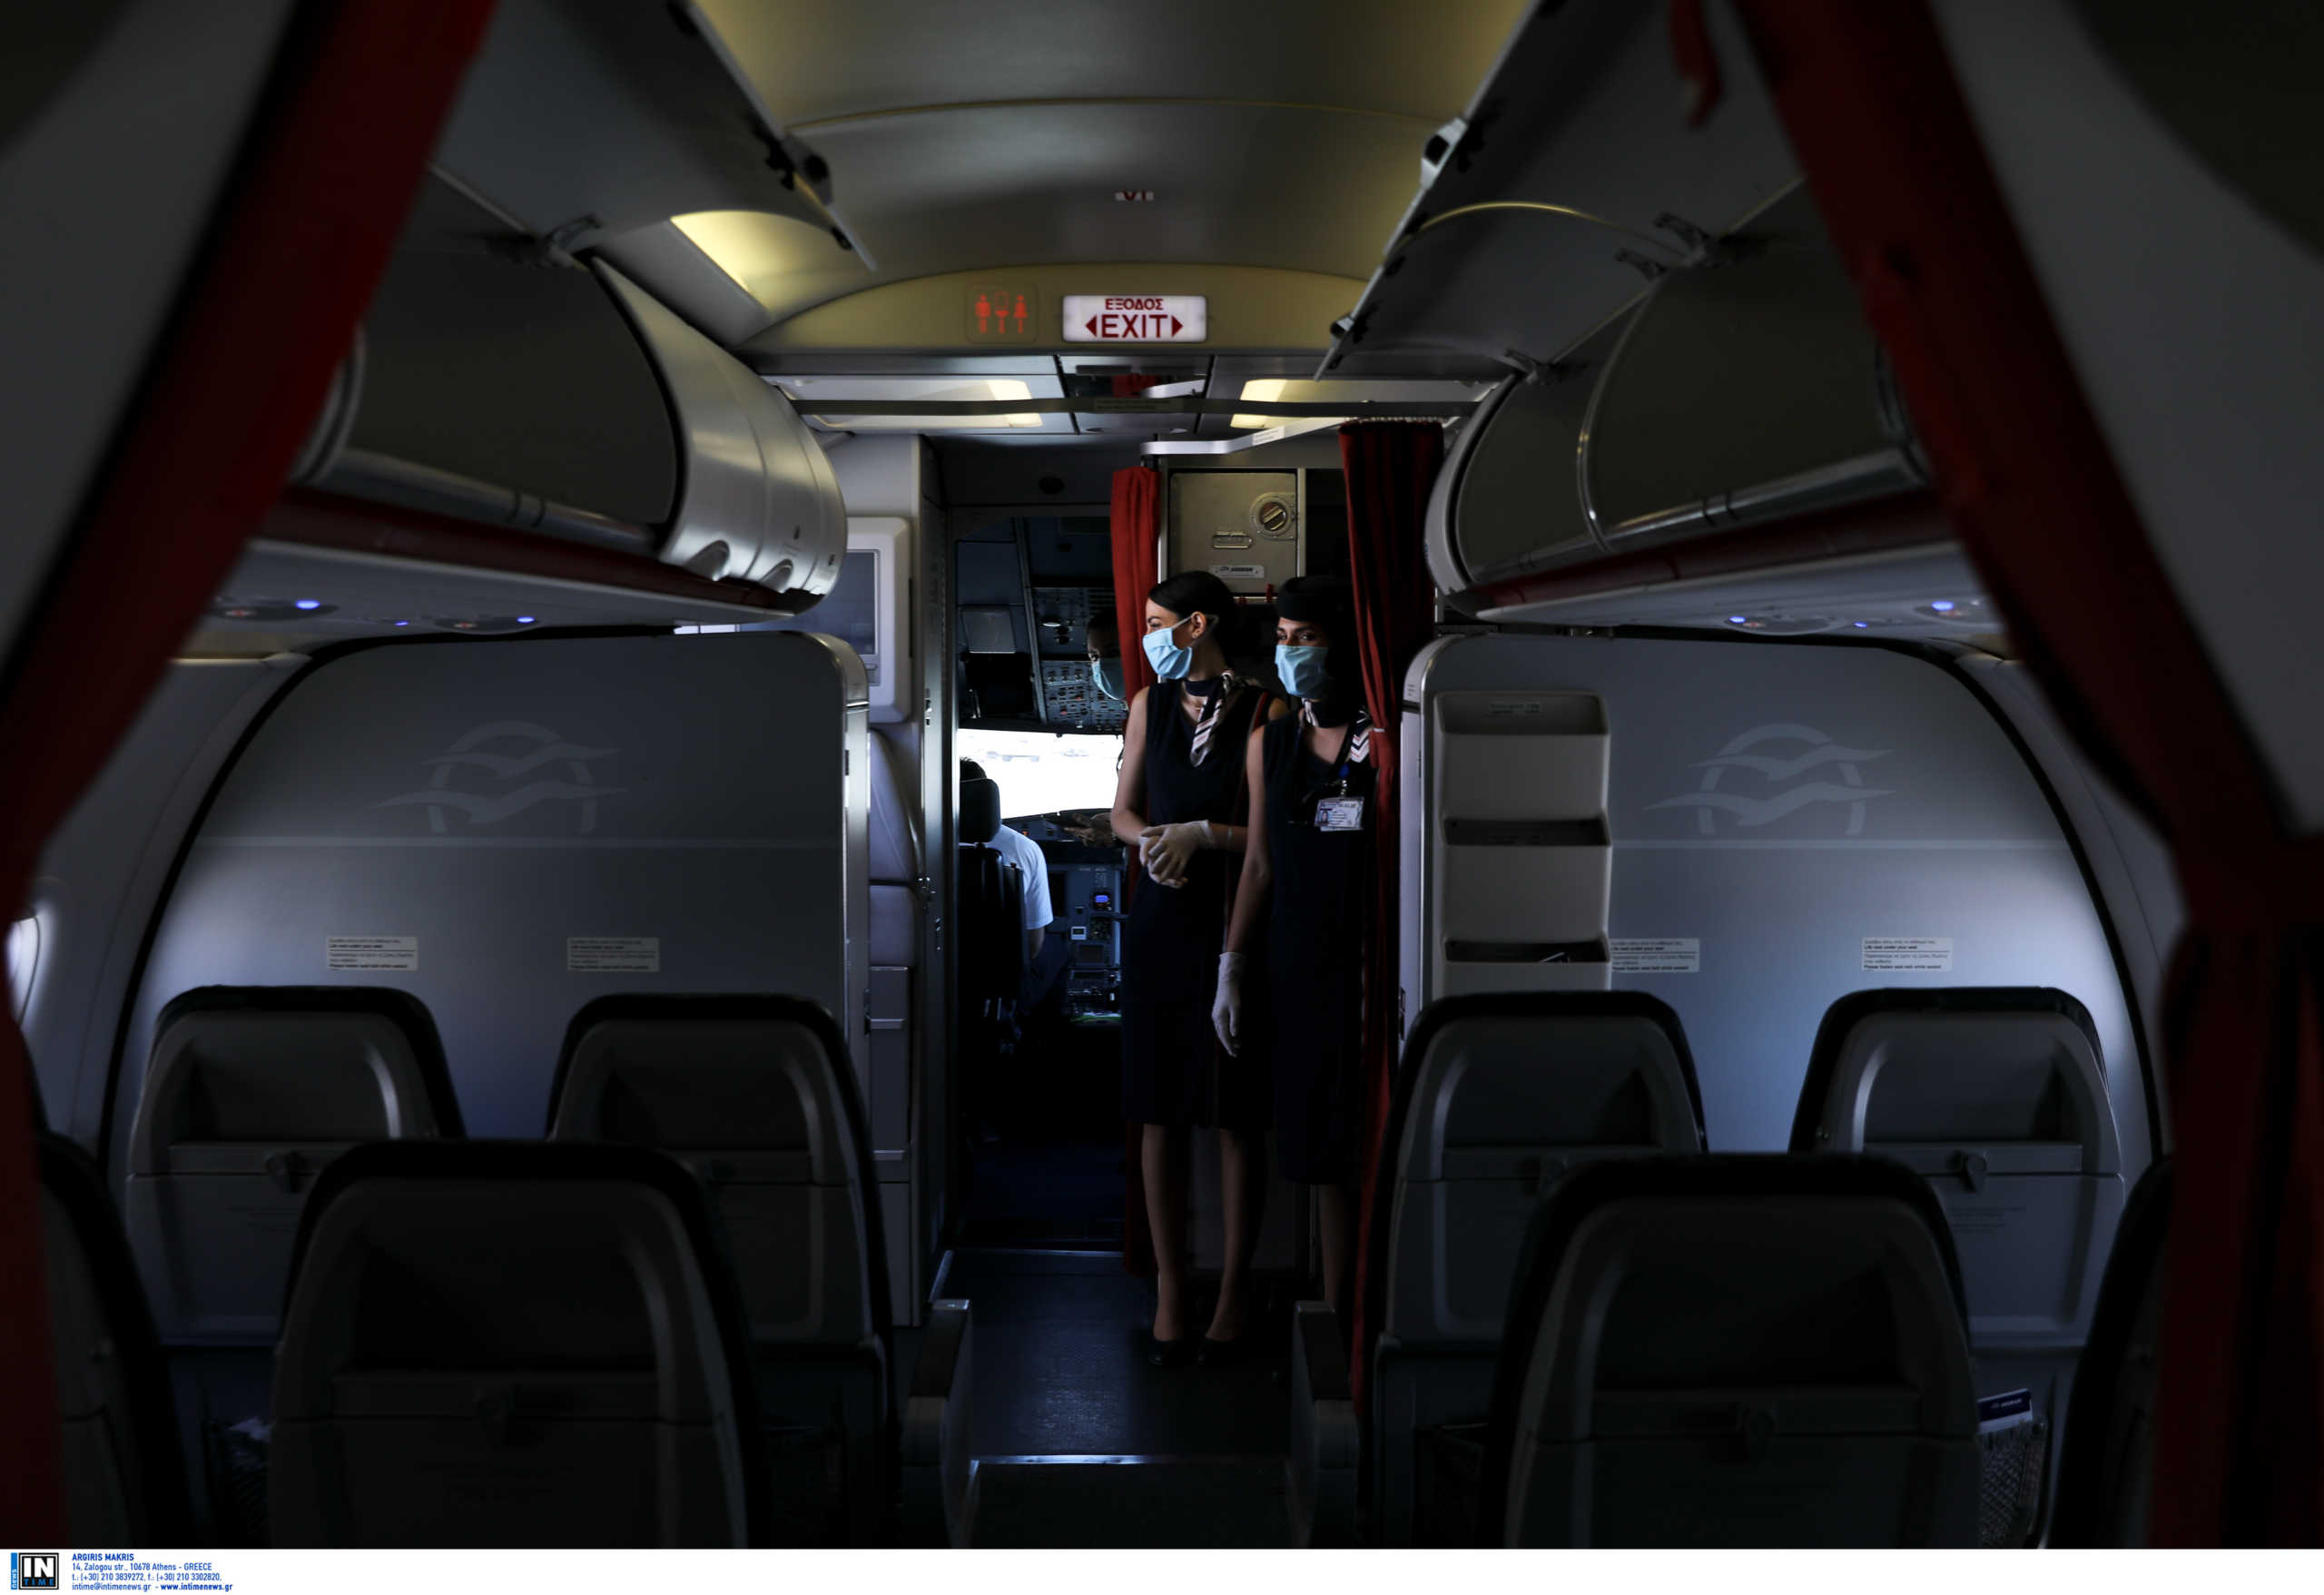 Καλαμάτα: Τα αεροπλάνα για Μόναχο και Βιέννη έφυγαν χωρίς δύο επιβάτες! Τι συνέβη στο αεροδρόμιο